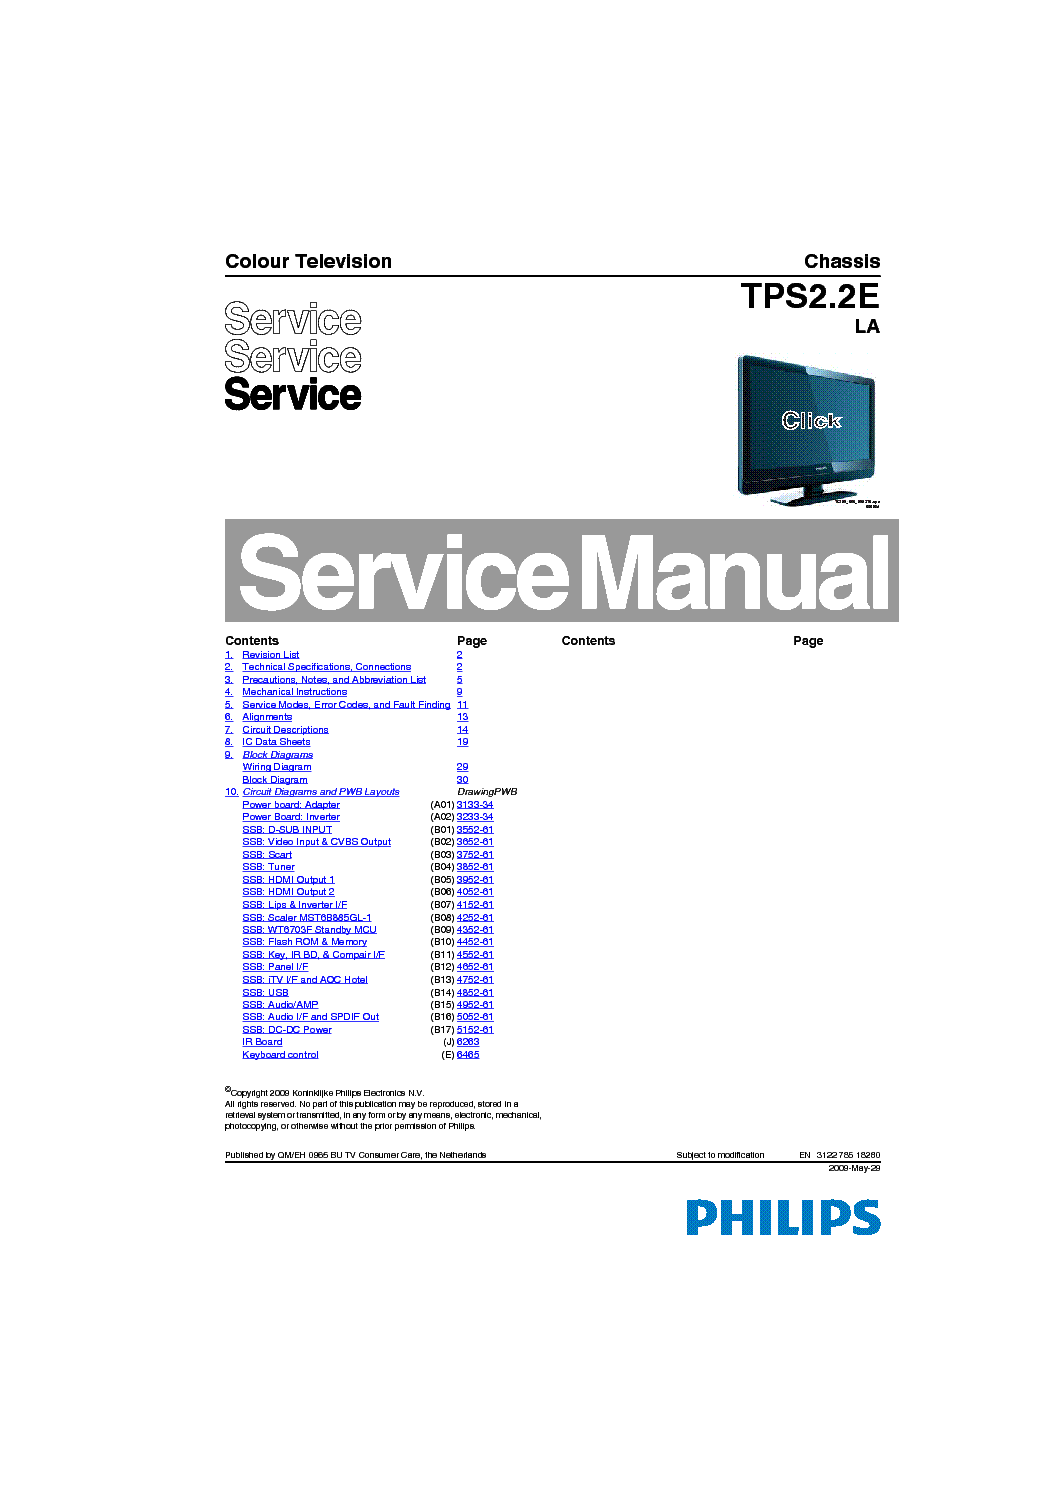 PHILIPS TPS2.2E-LA CHASSIS SM service manual (1st page)